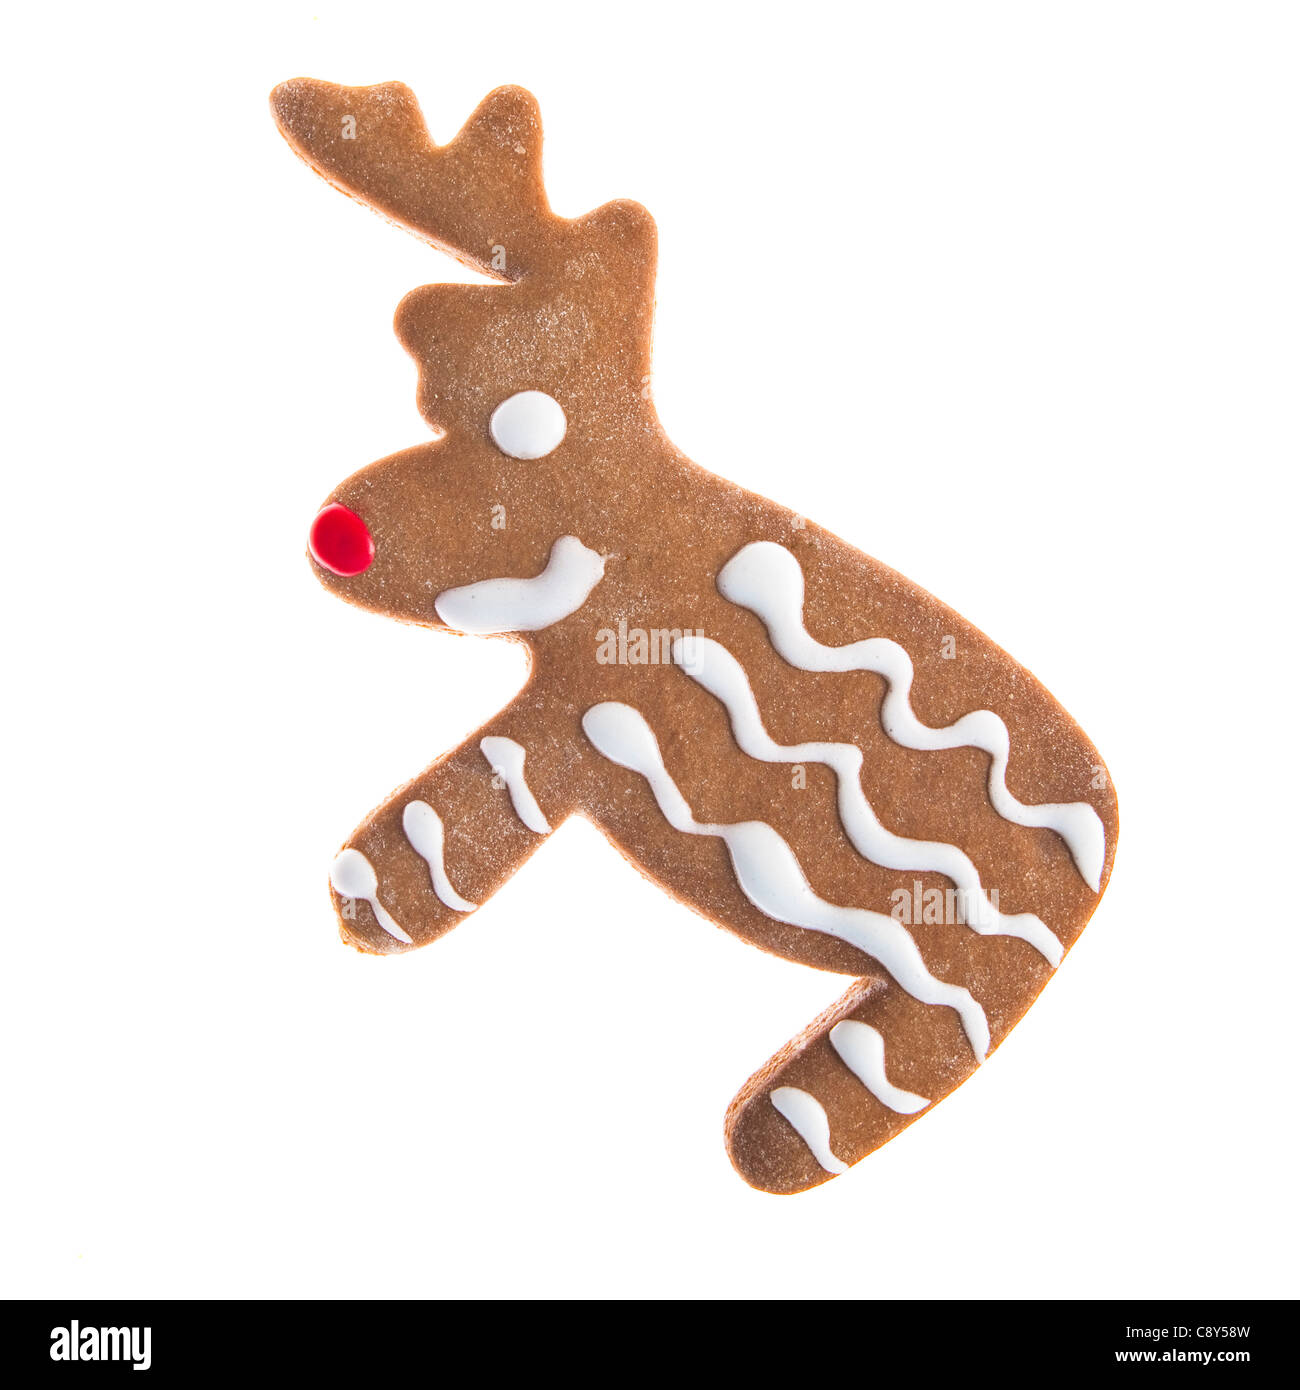 Gingerbread cookies faits maison de Noël avec une forme d'un renne isolated on white Banque D'Images